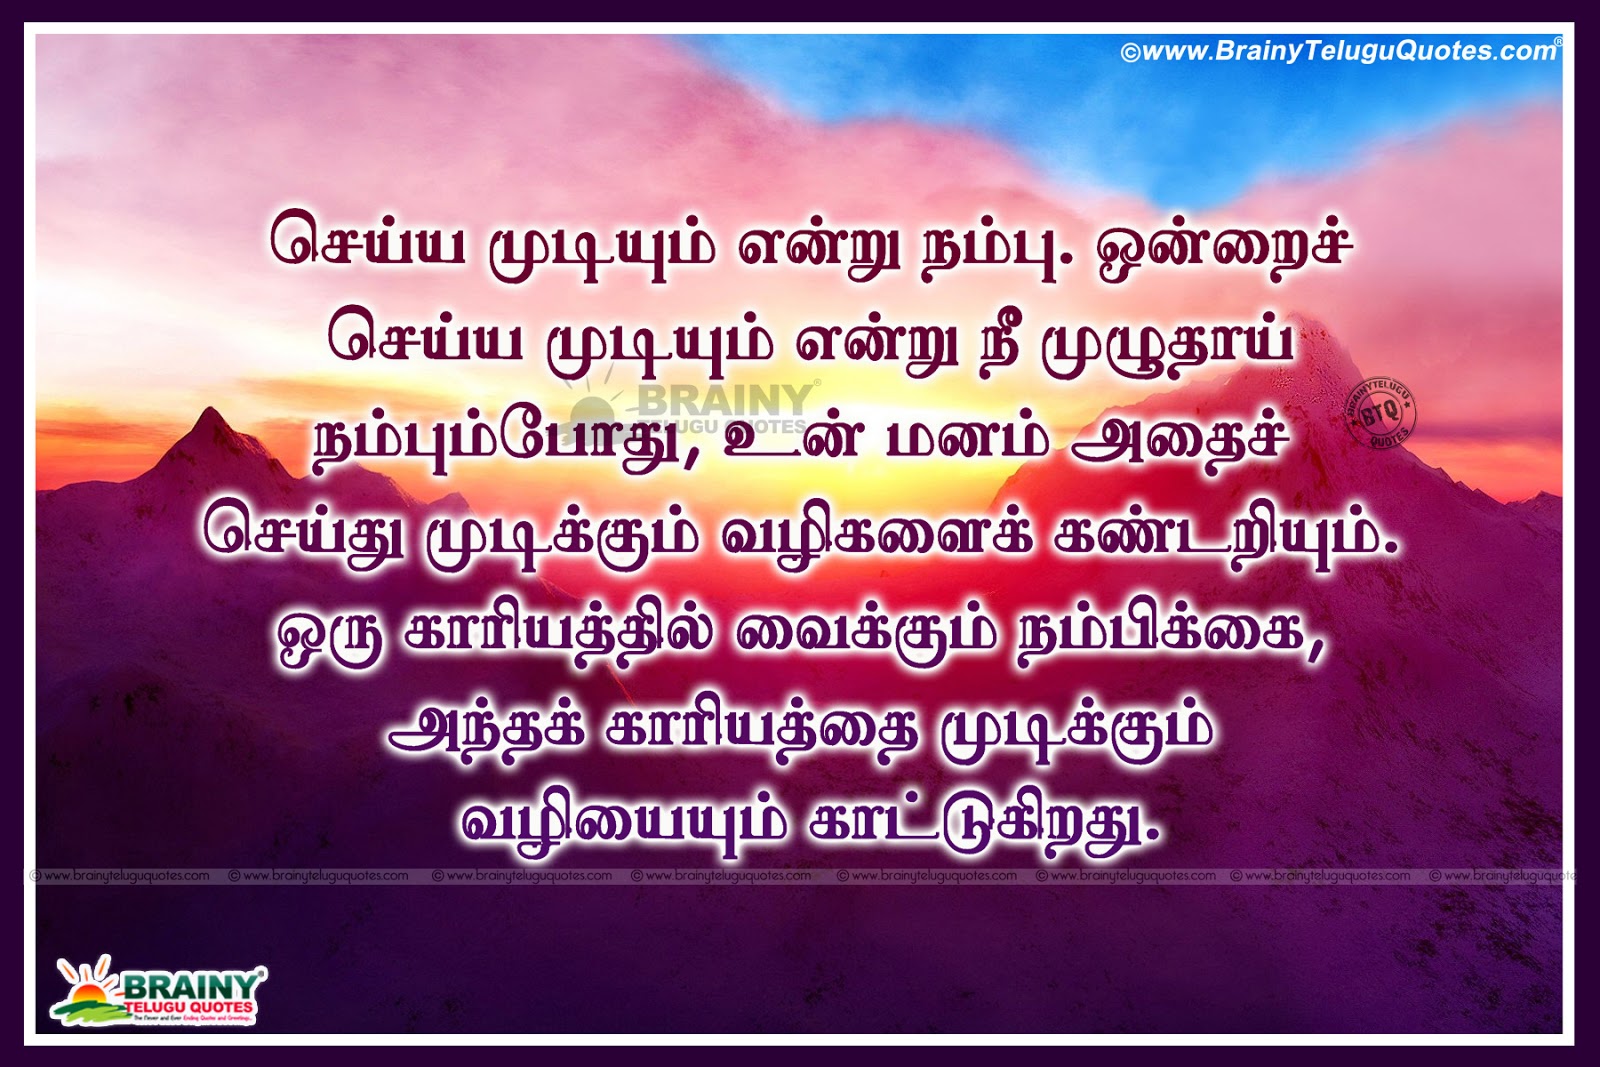 Trending Famous Tamil  Inspirational Sayings  in Tamil  Tamil  